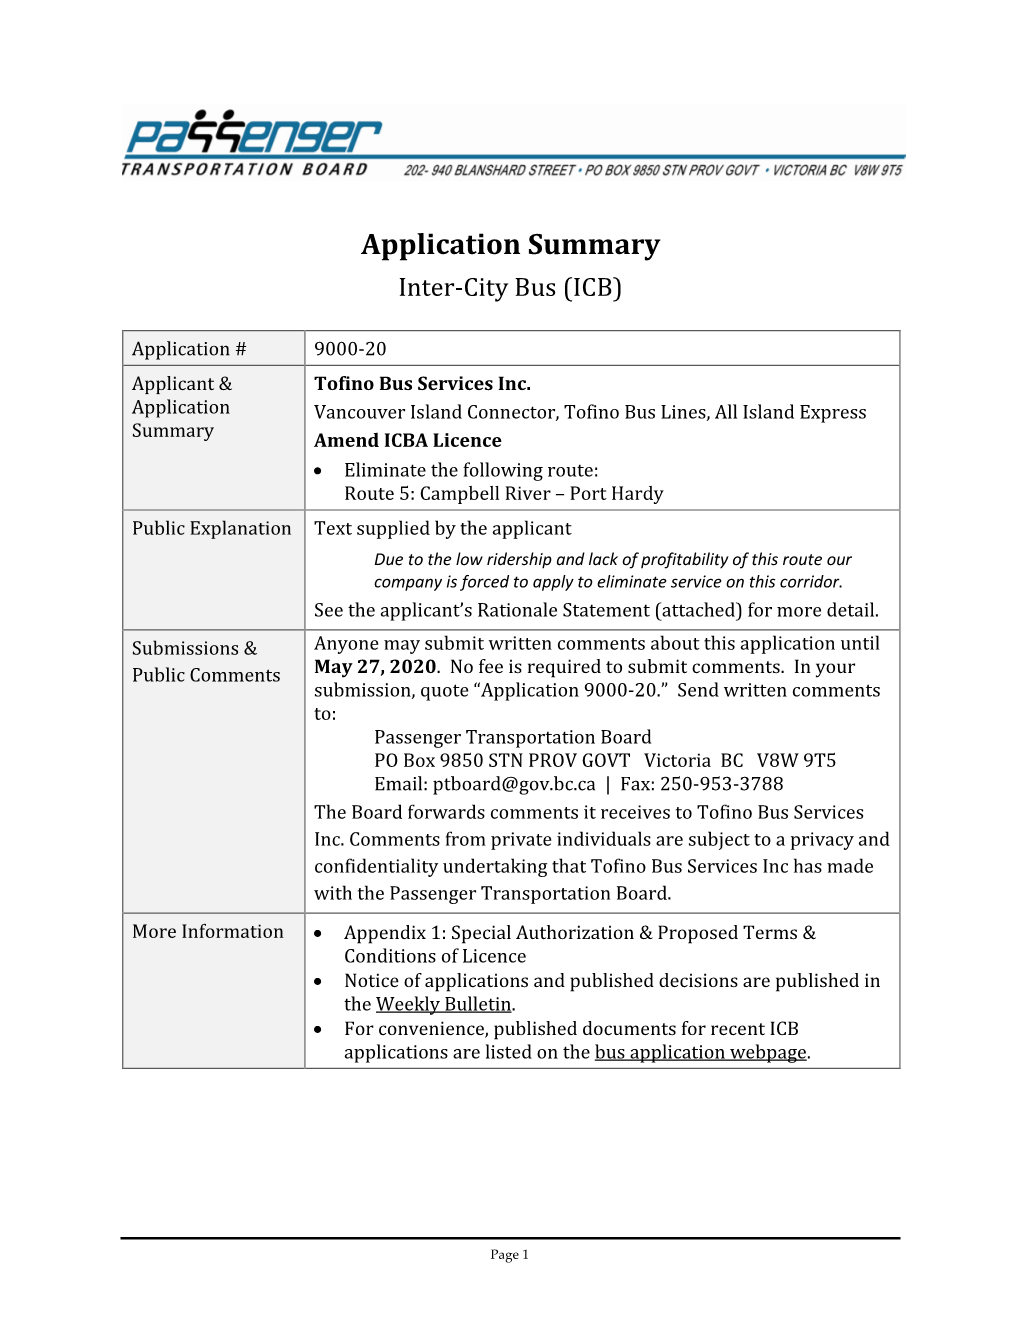 May 13, 2020: Application Summary